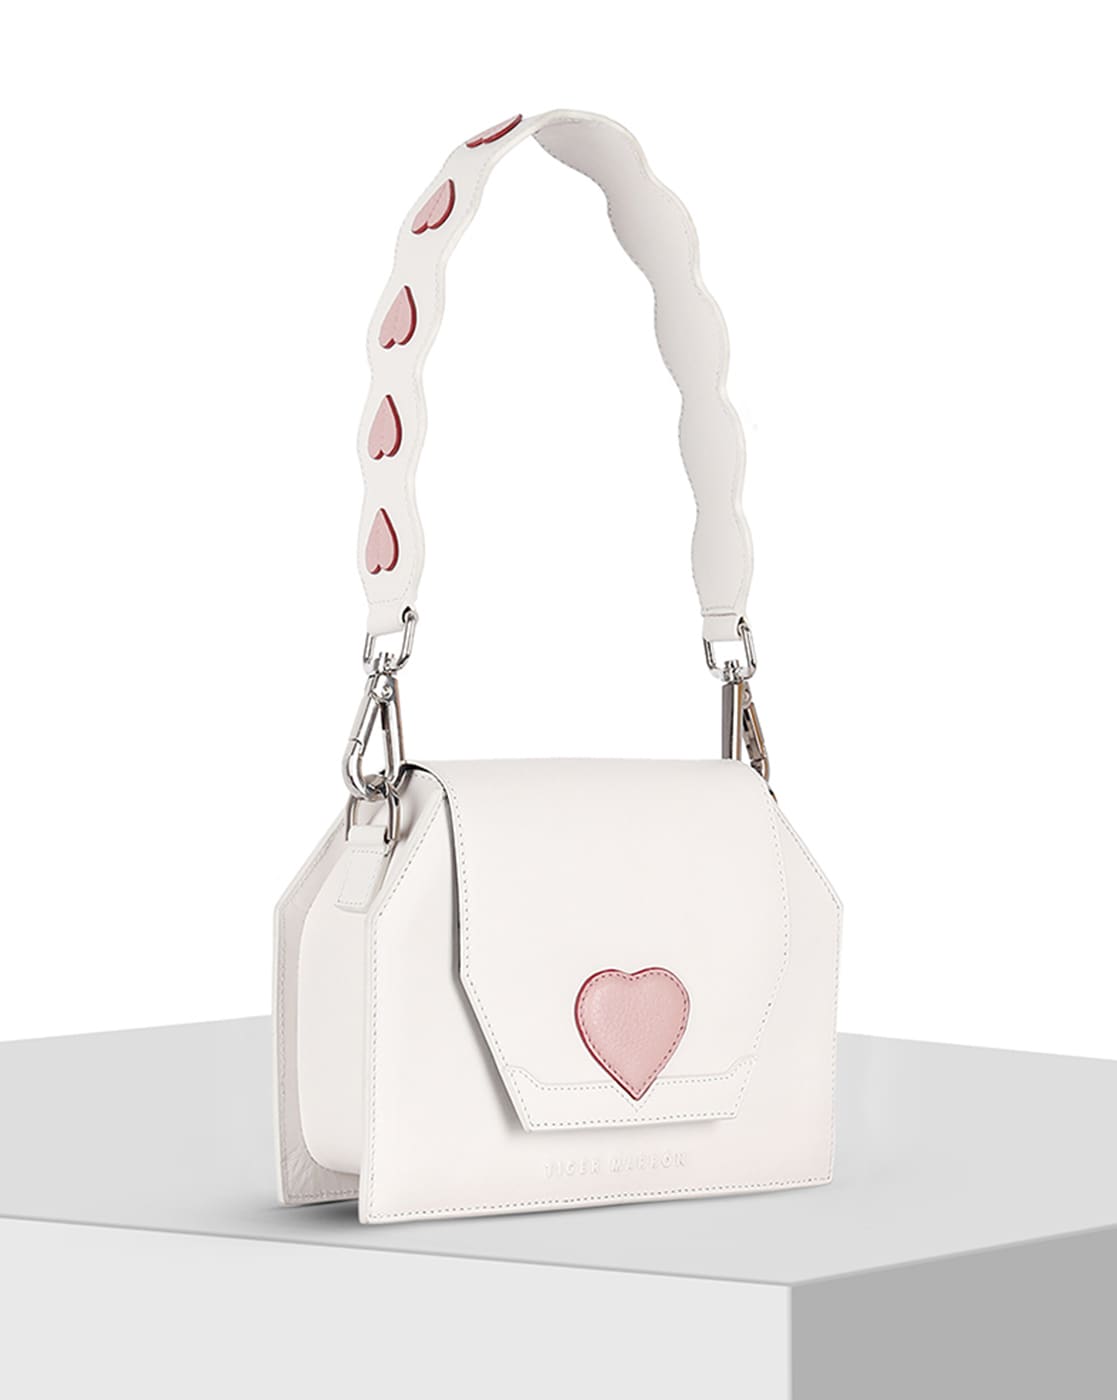 Heart Handbag